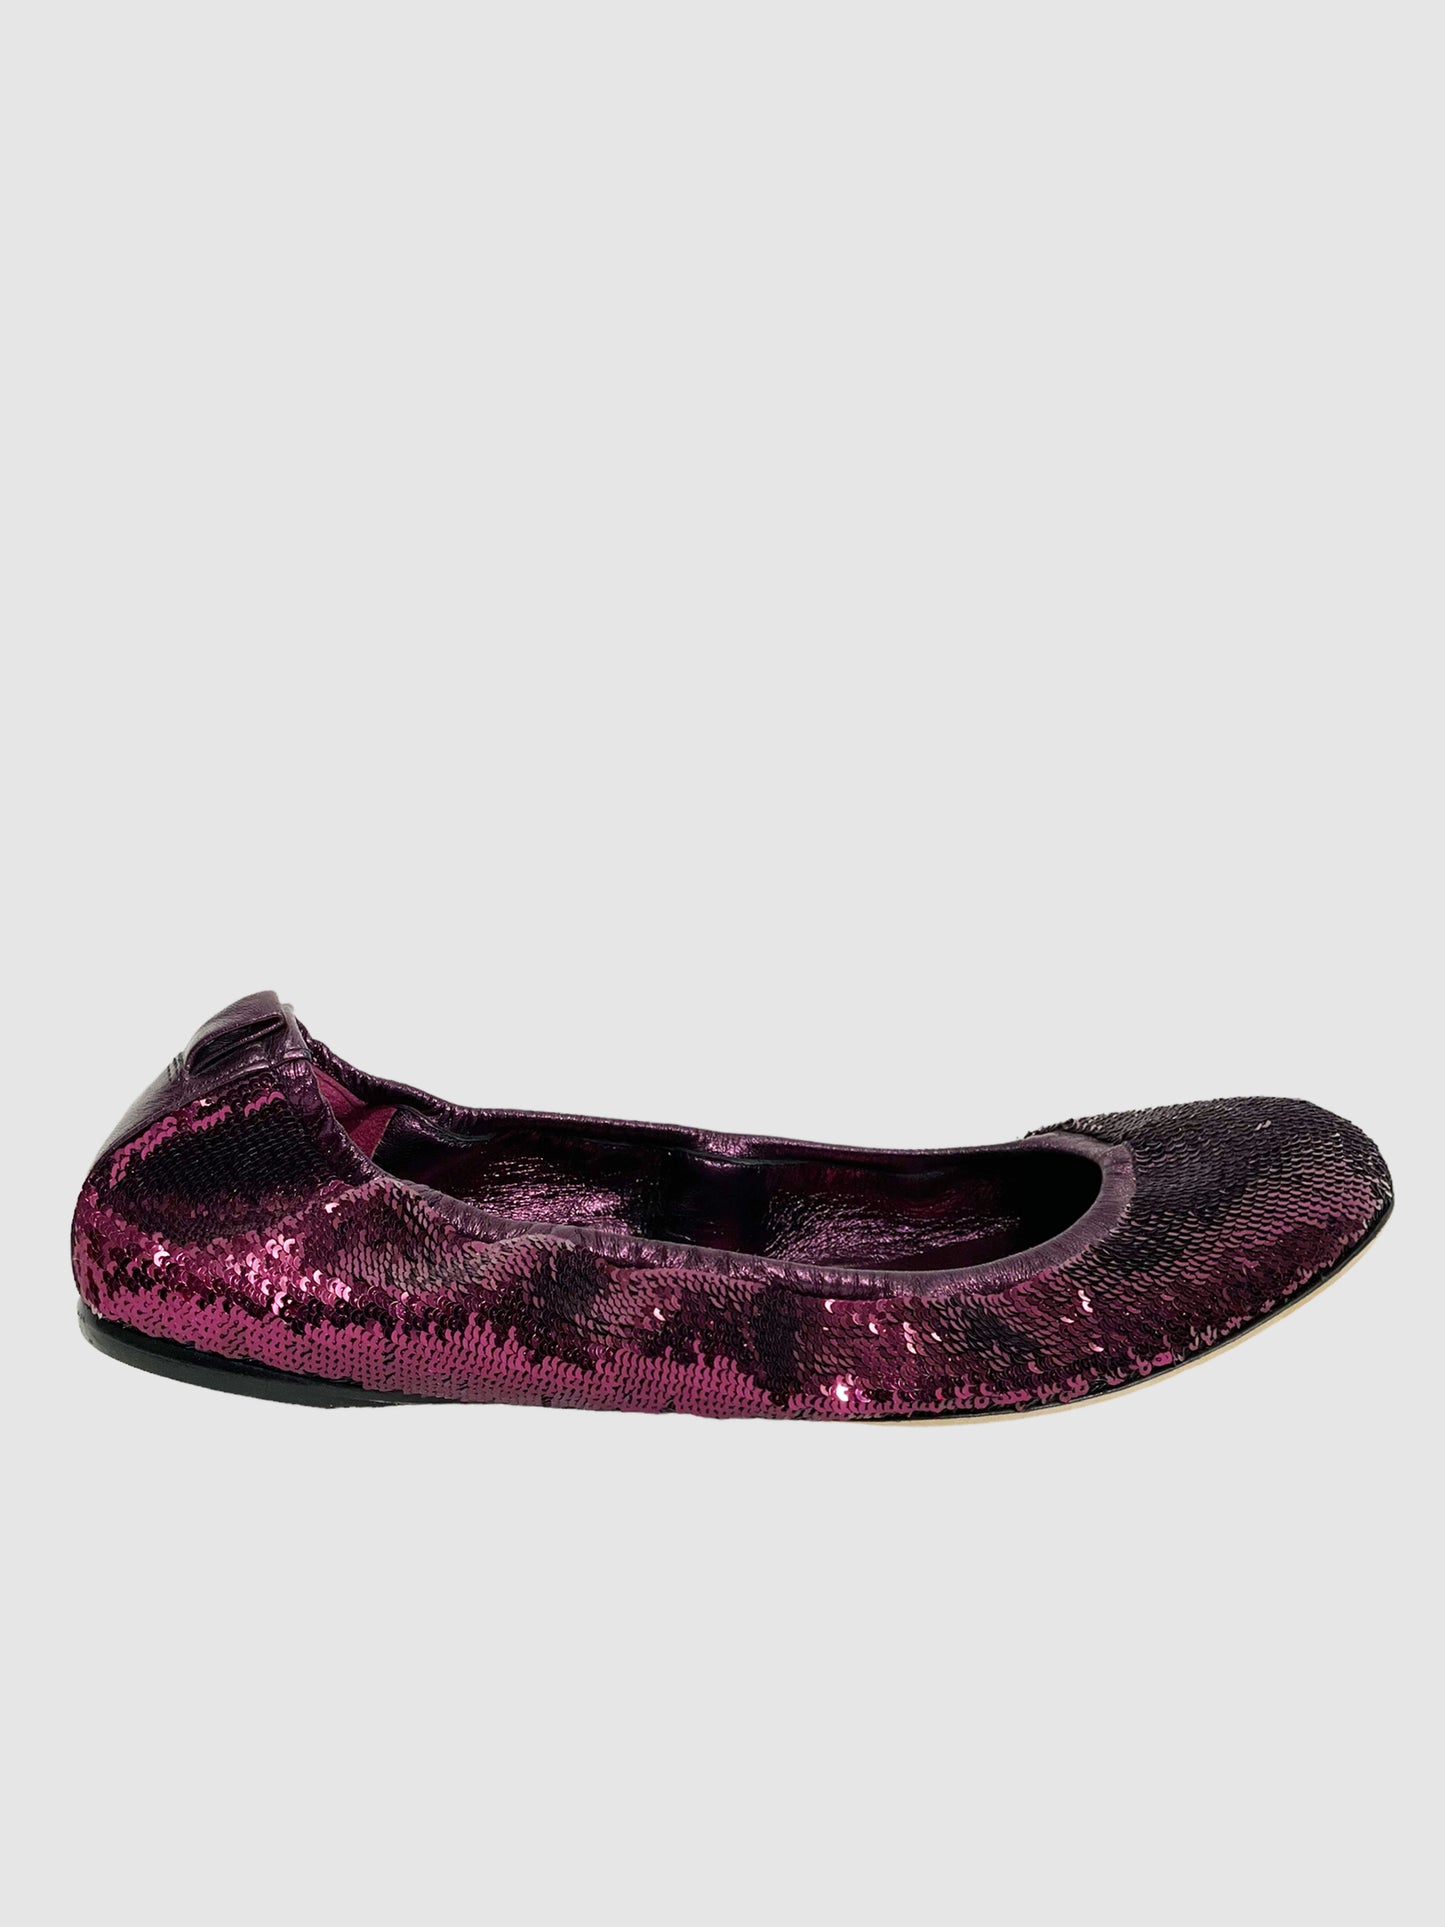 Gucci Purple Fuchsia Sequin Ballet Flats - Size 37.5